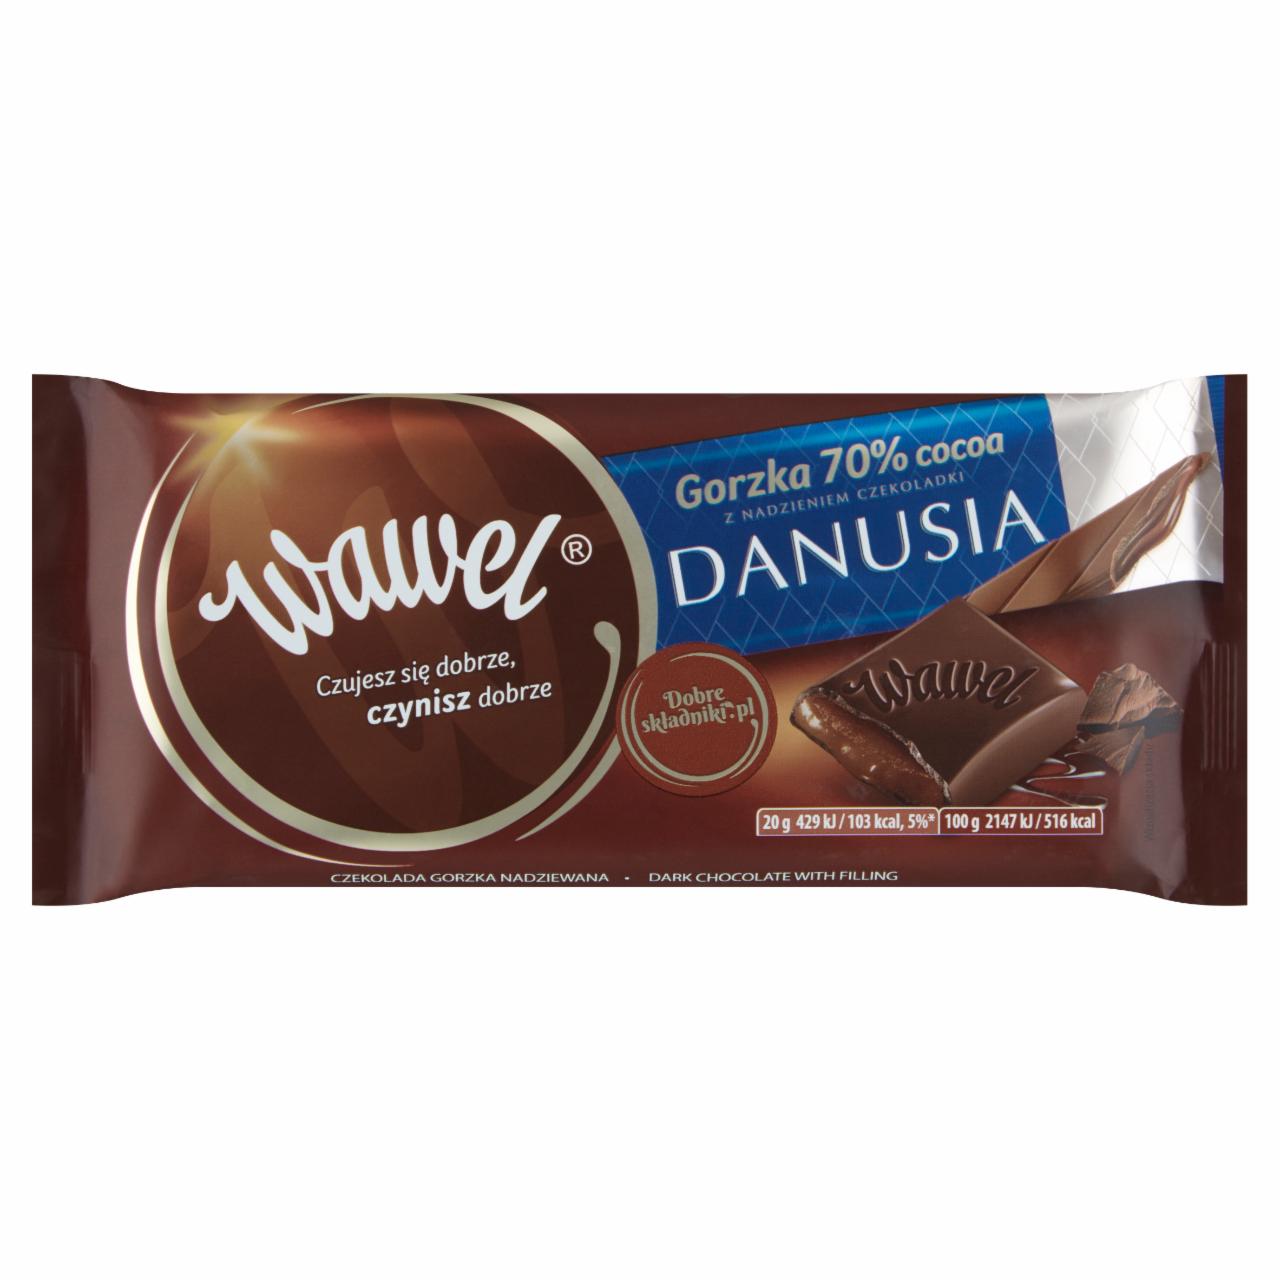 Zdjęcia - Wawel Czekolada gorzka 70 % cocoa z nadzieniem czekoladki Danusia 100 g